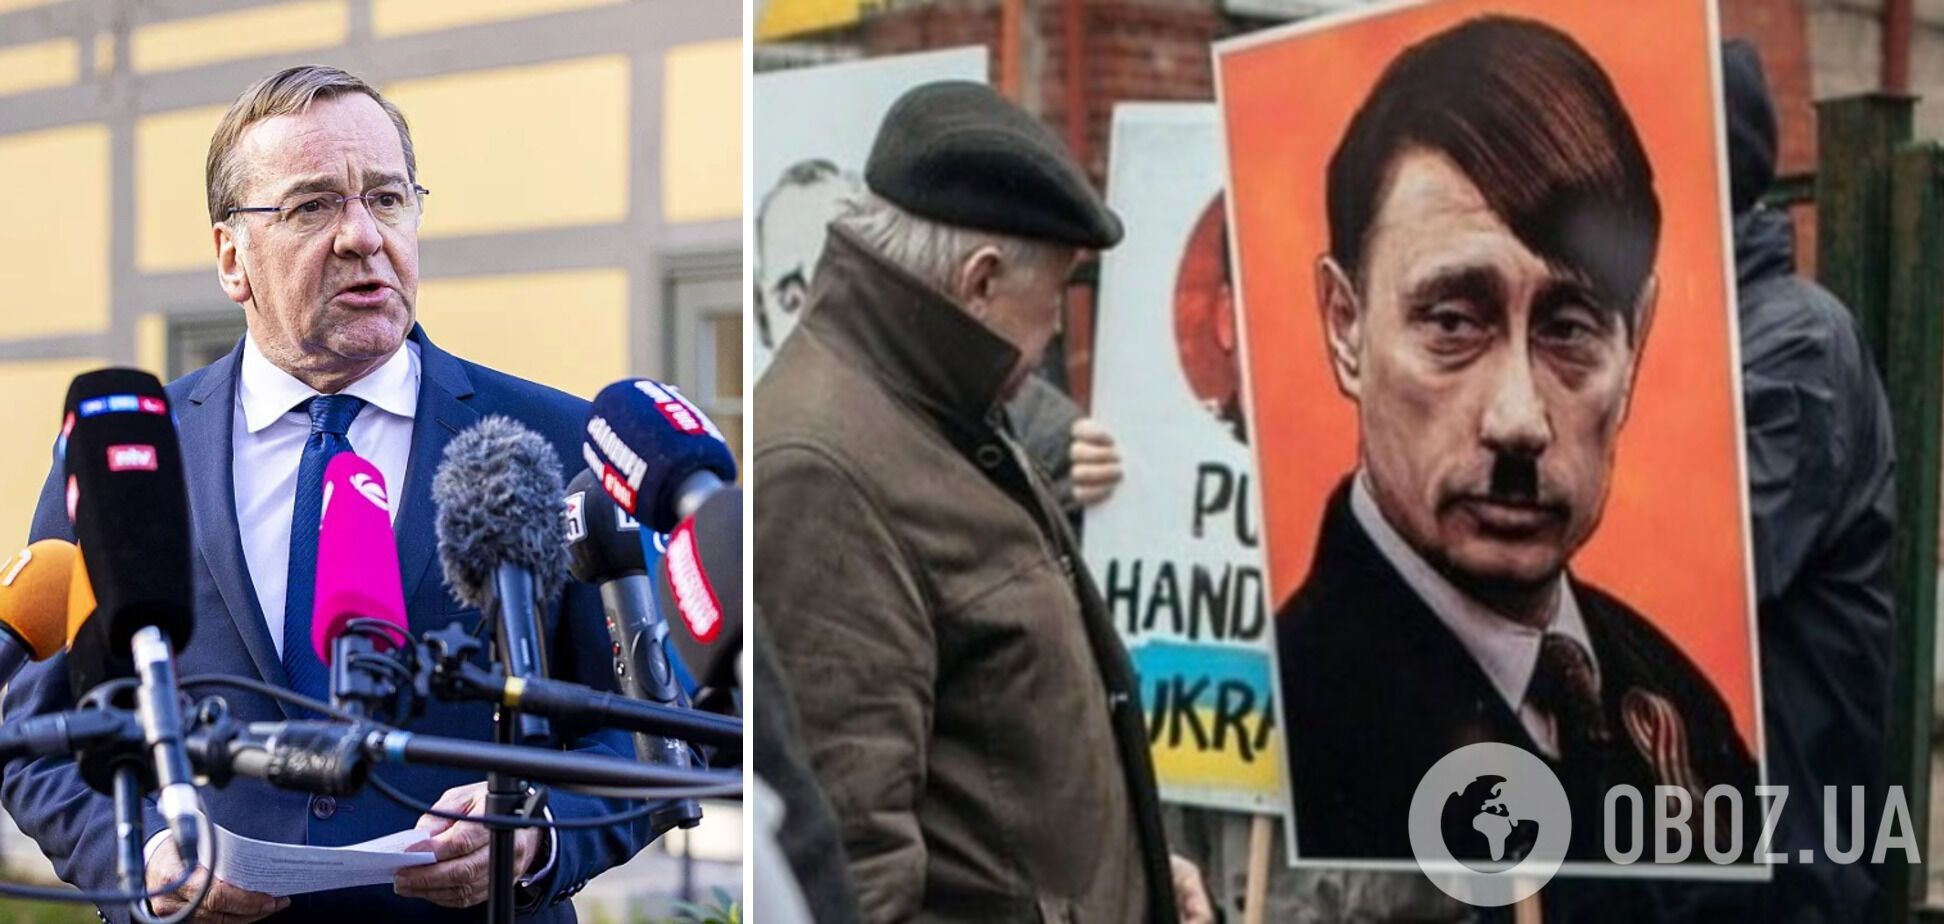 Писториус сравнил Путина с Гитлером и заявил, что Европа должна готовиться к агрессии со стороны России